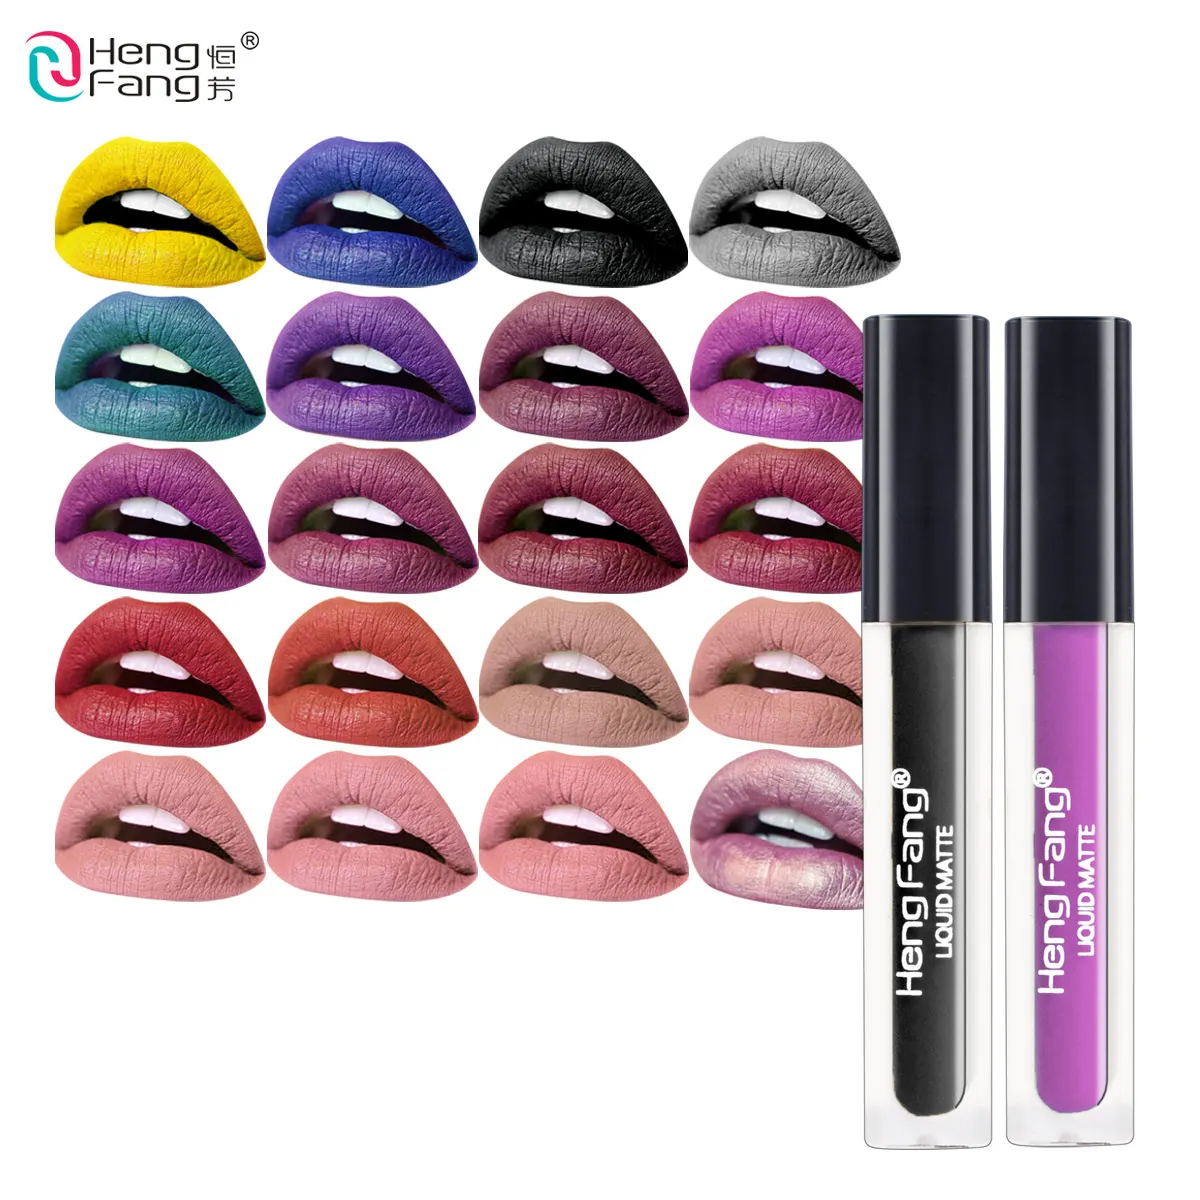 20 цветов стойкий блеск для губ Водонепроницаемая матовая Жидкость Помада 2g красота макияж бренд Hengfang# H7014